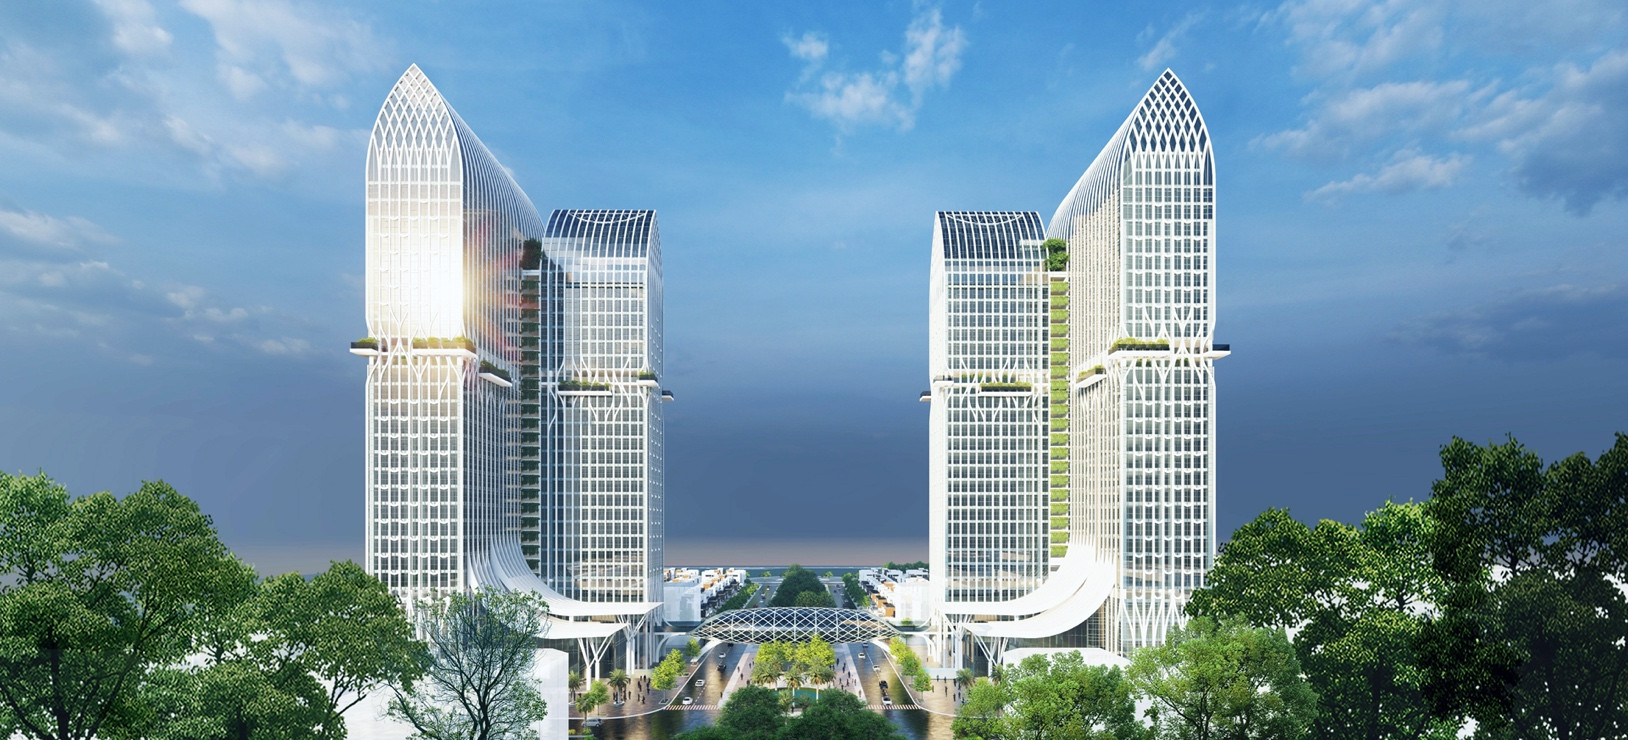 Văn Phú - Invest đạt hơn 1.500 tỉ đồng doanh thu trong 6 tháng đầu năm nhờ dự án Vlasta - Sầm Sơn - Ảnh 1.